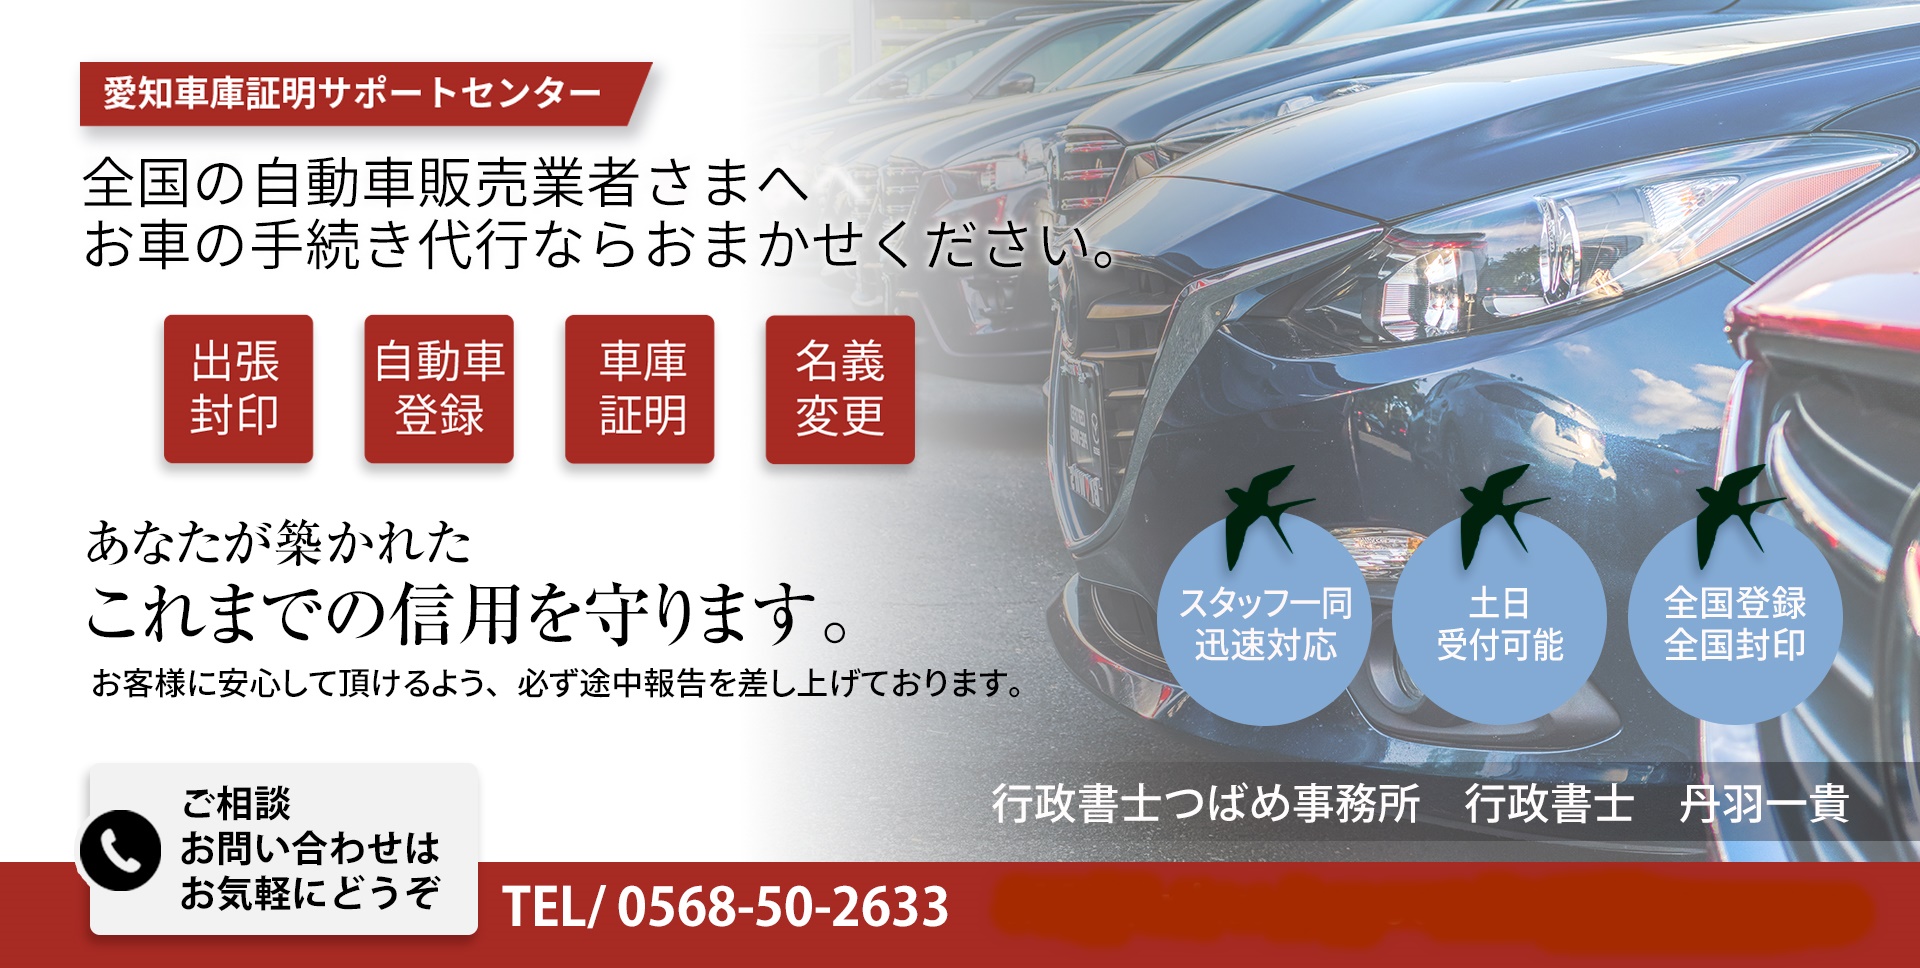 稲沢市の車庫証明 | 行政書士つばめ事務所が稲沢警察署の車庫証明を代行します